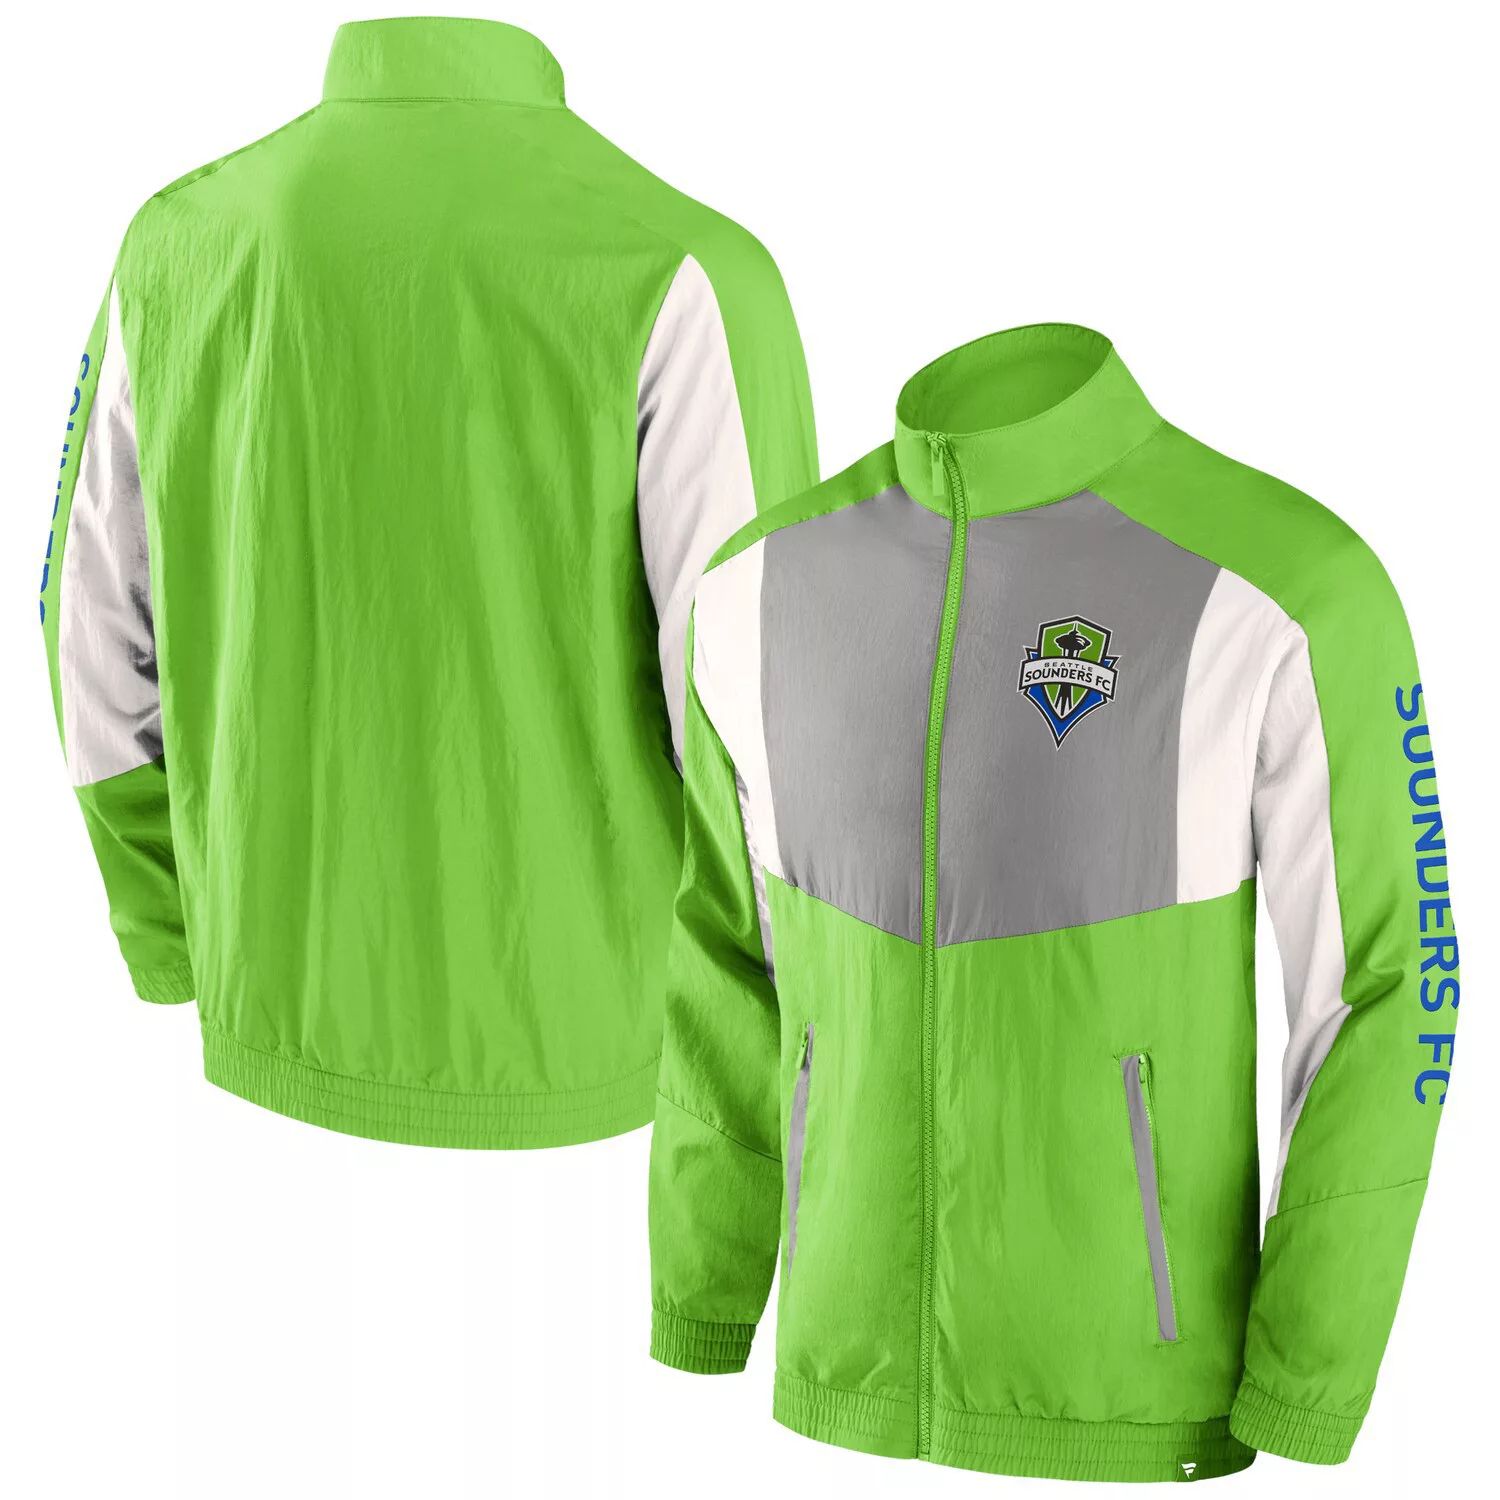 Мужская фирменная спортивная куртка Rave Green Seattle Sounders FC Net Goal с молнией во всю длину и регланом Fanatics